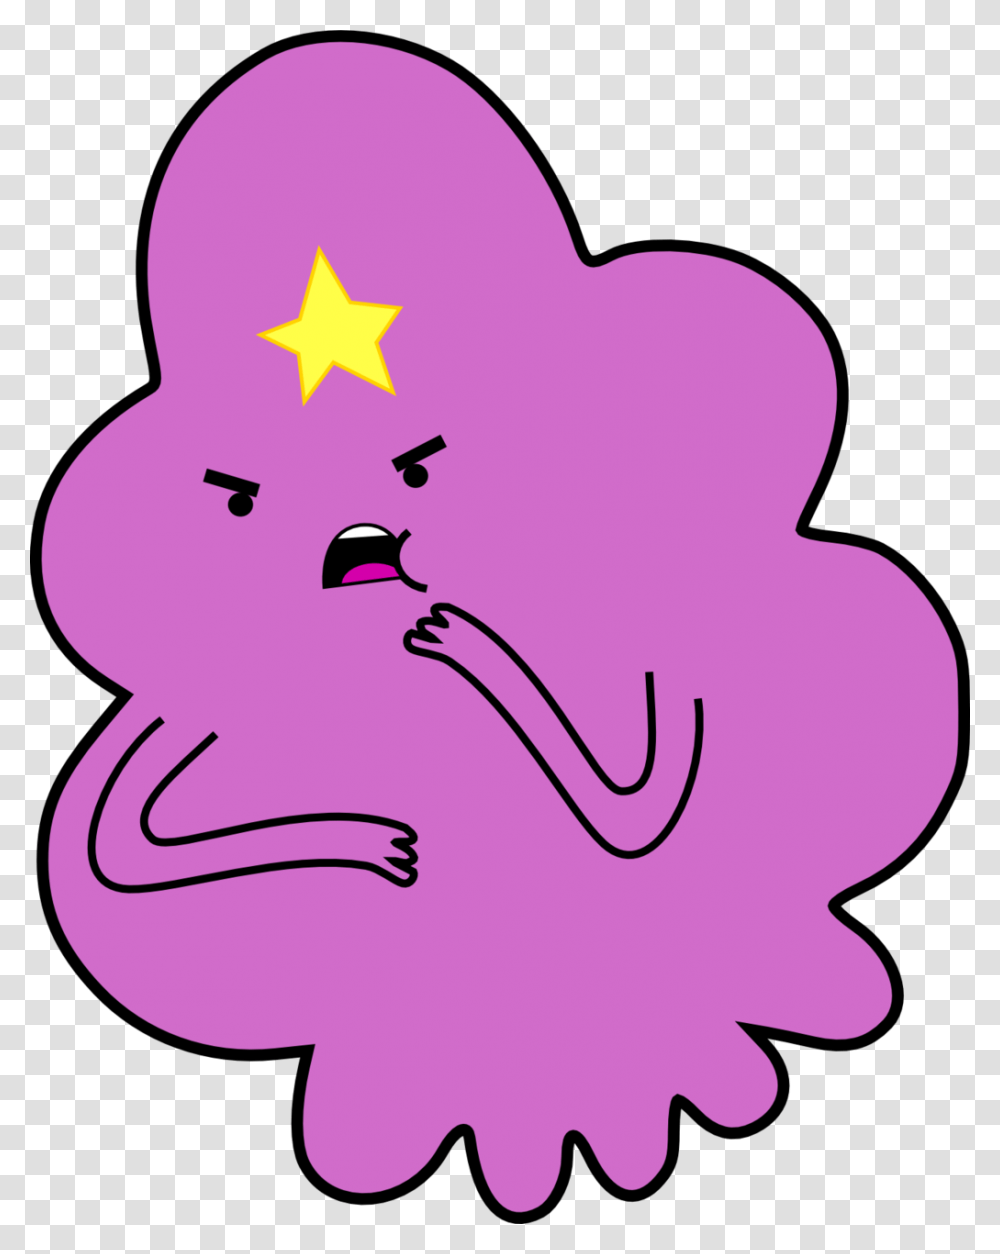 Princess Bubblegum Vs Lumpy Space Princess, Heart, Star Symbol Transparent Png